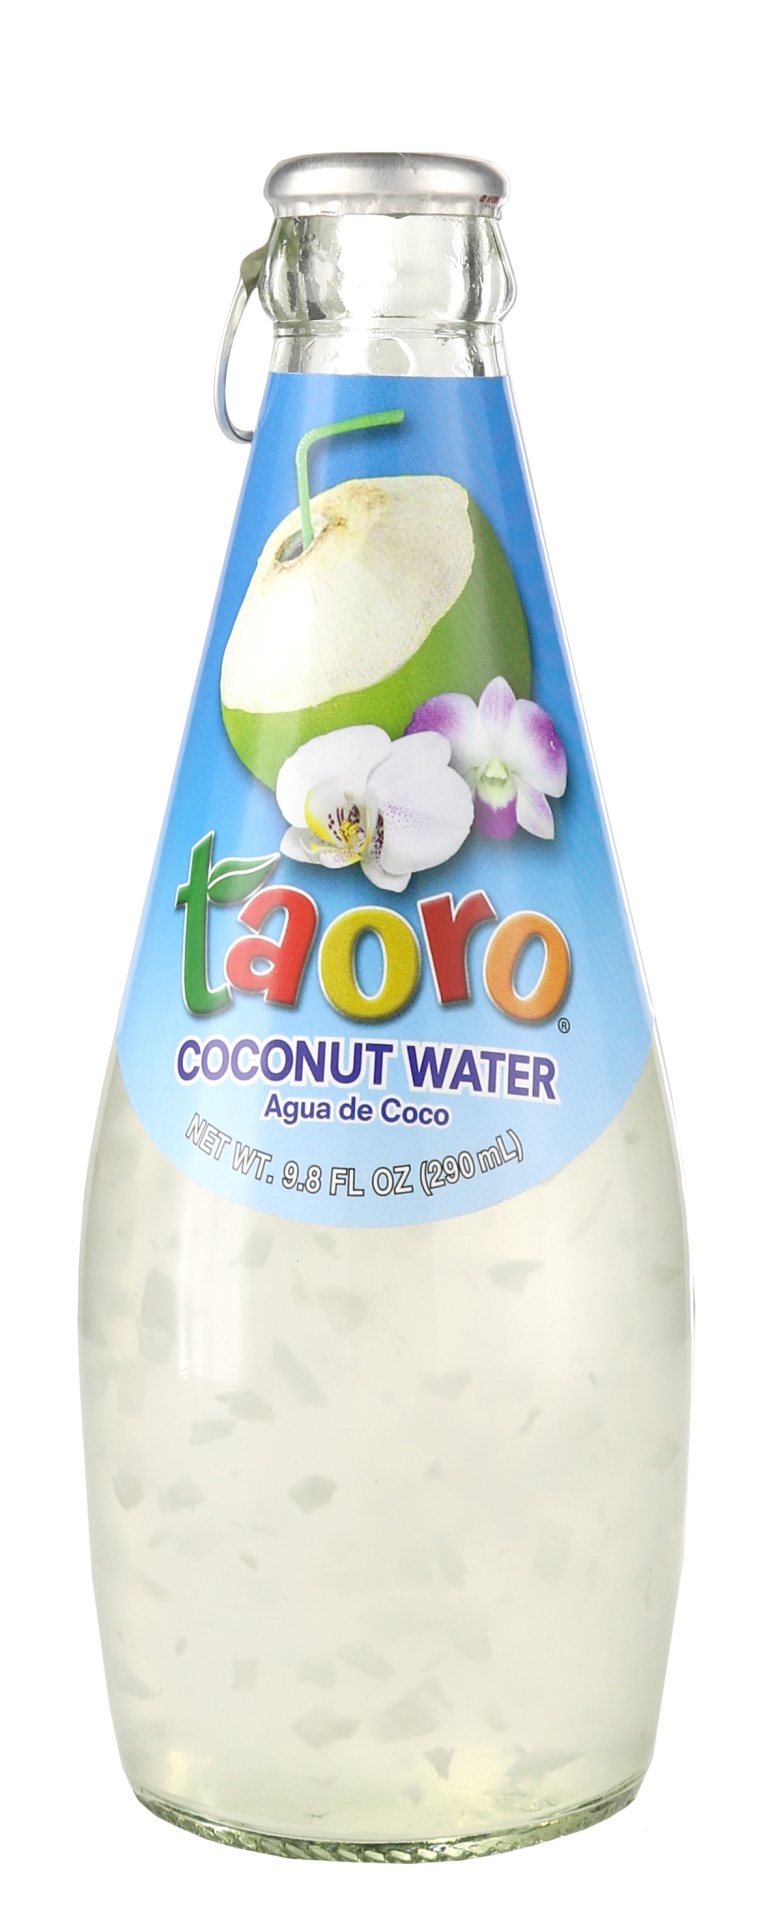 slide 1 of 1, Taoro Coconut Water Bottle, 9.8 fl oz